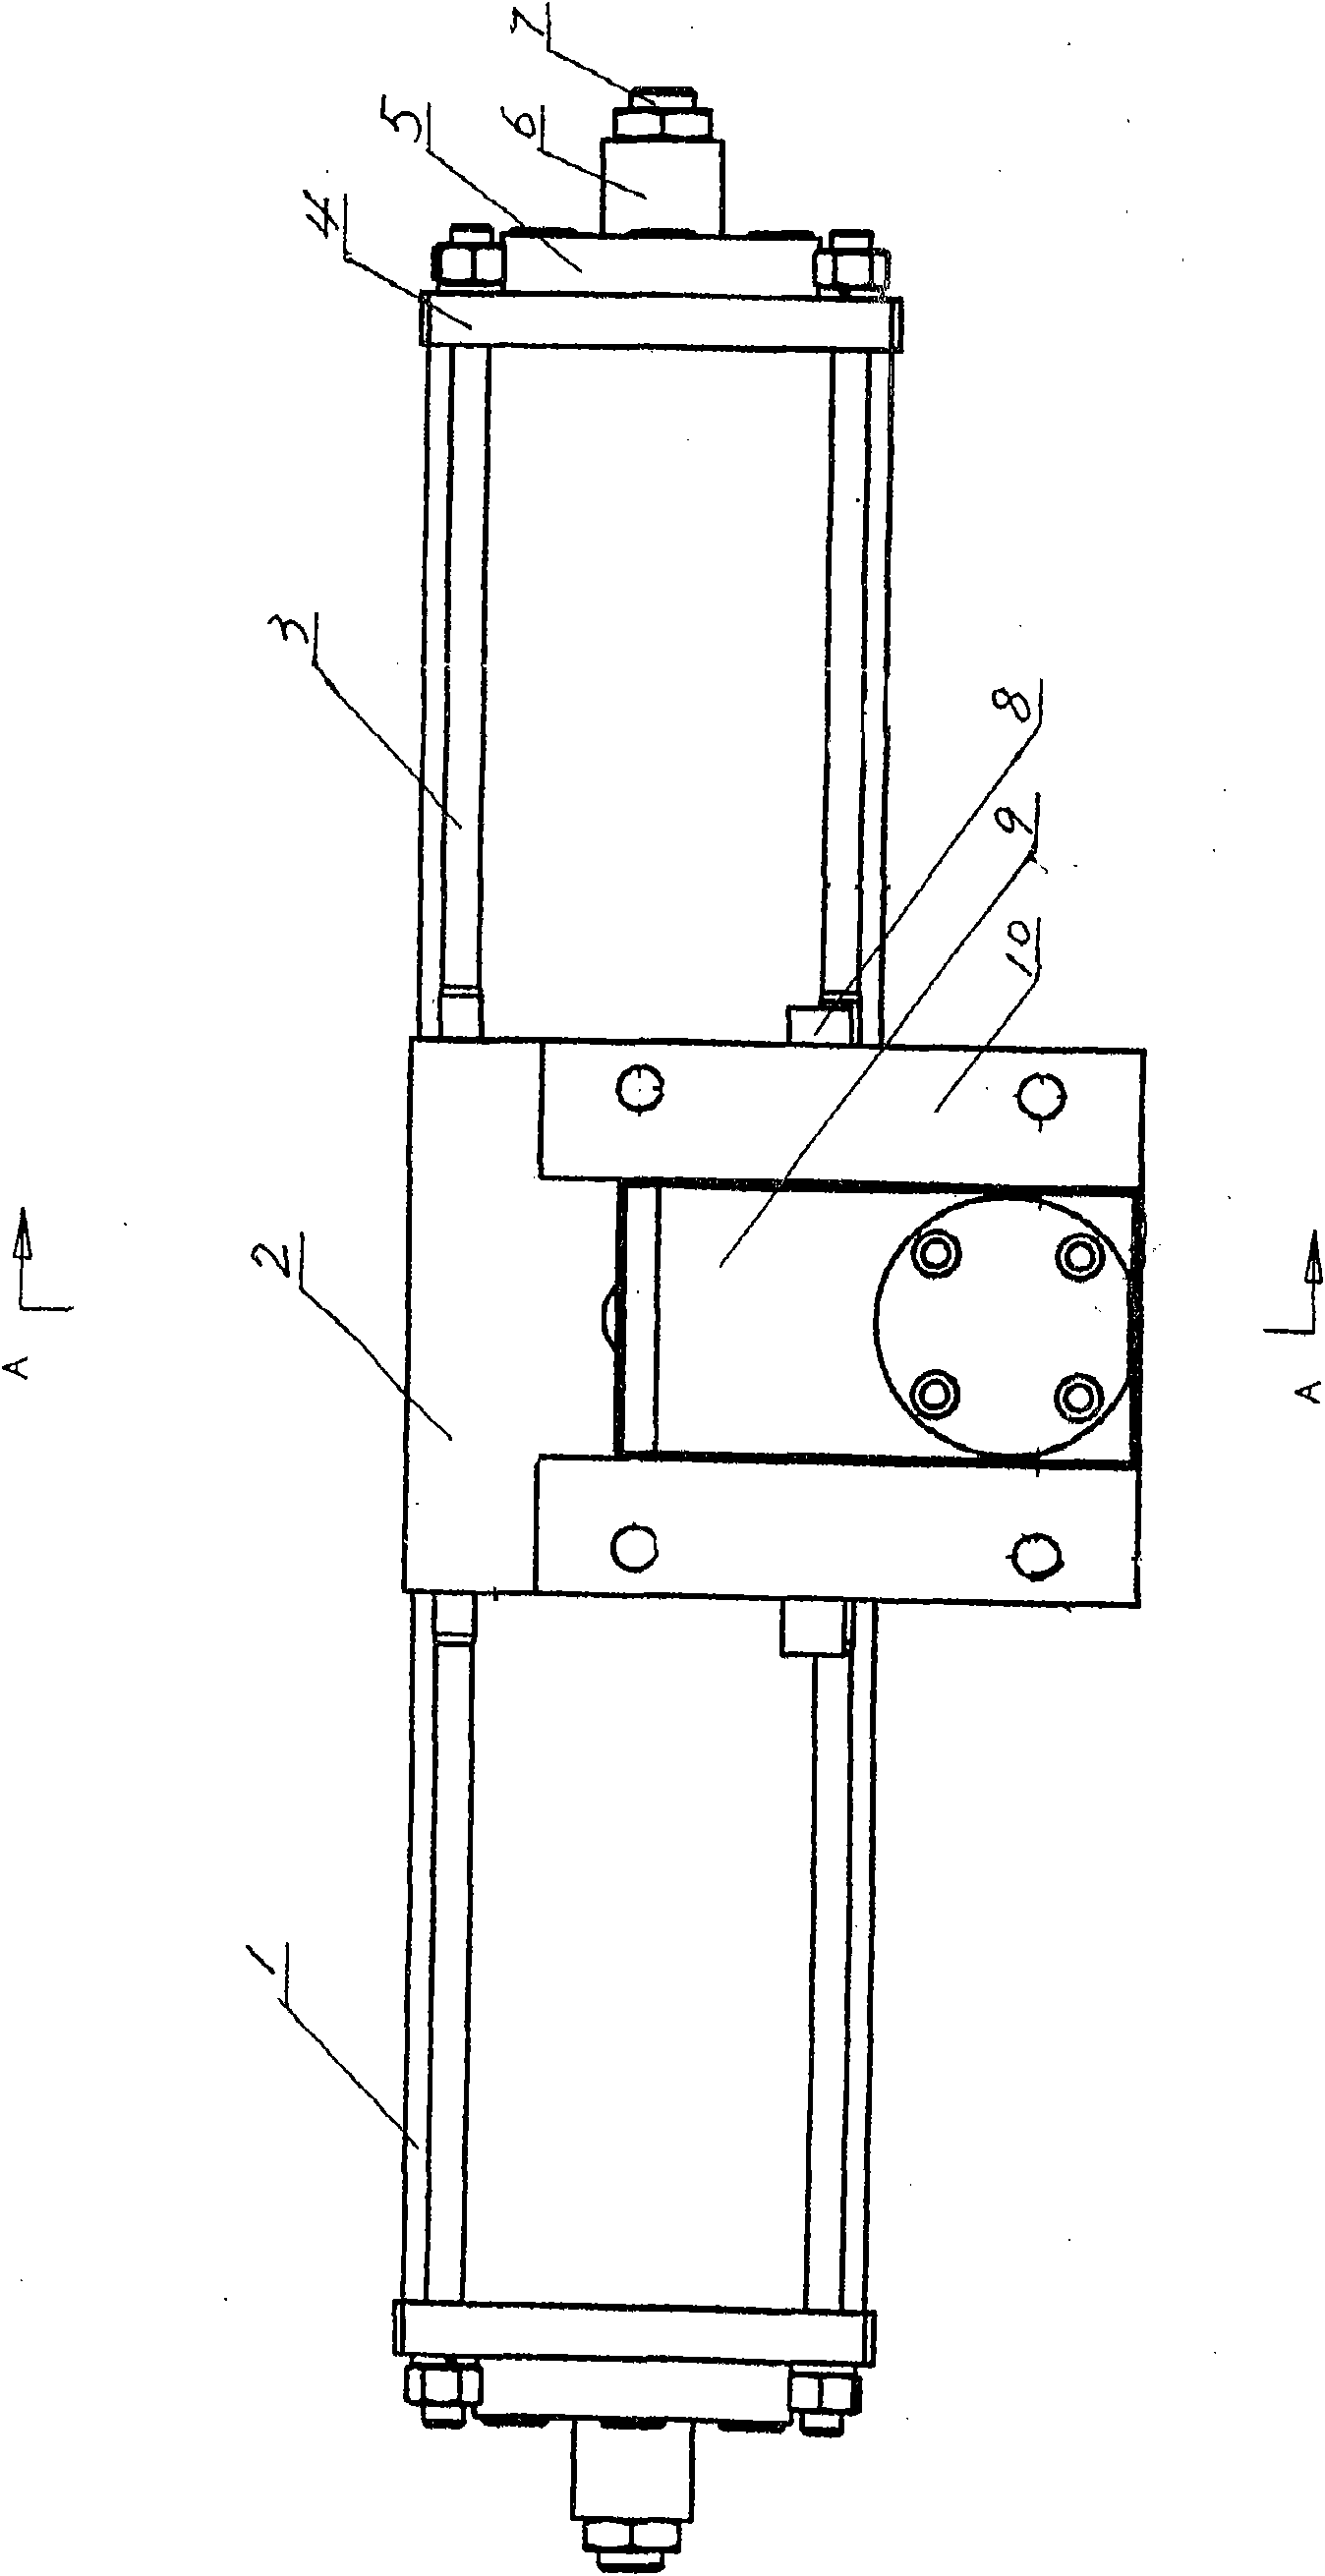 Window-opening mechanism